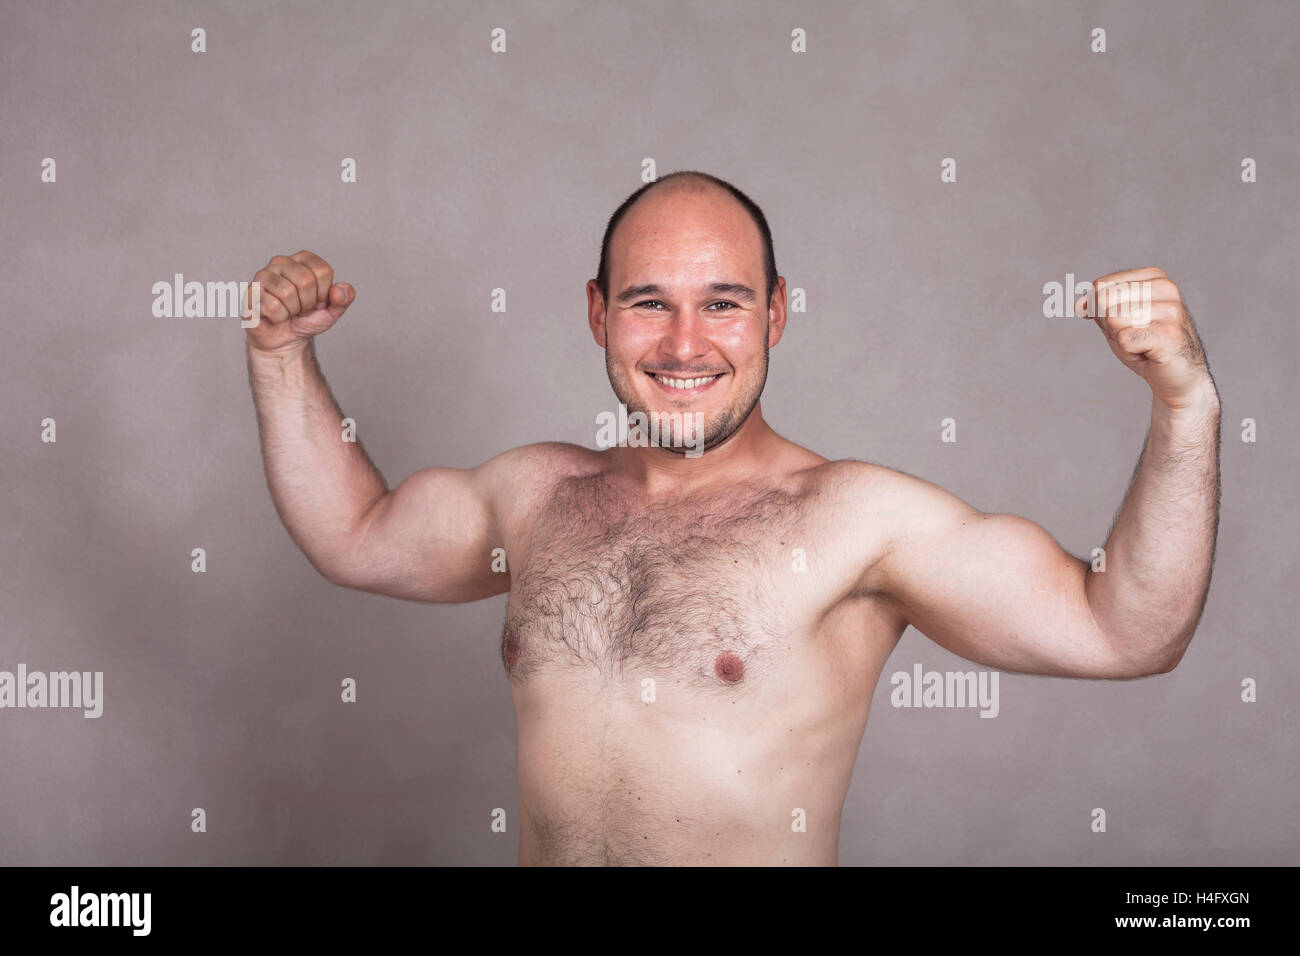 Porträt von nacktem Oberkörper glücklich posiert und zeigt seine starken Arme und behaarten Körper. Stockfoto